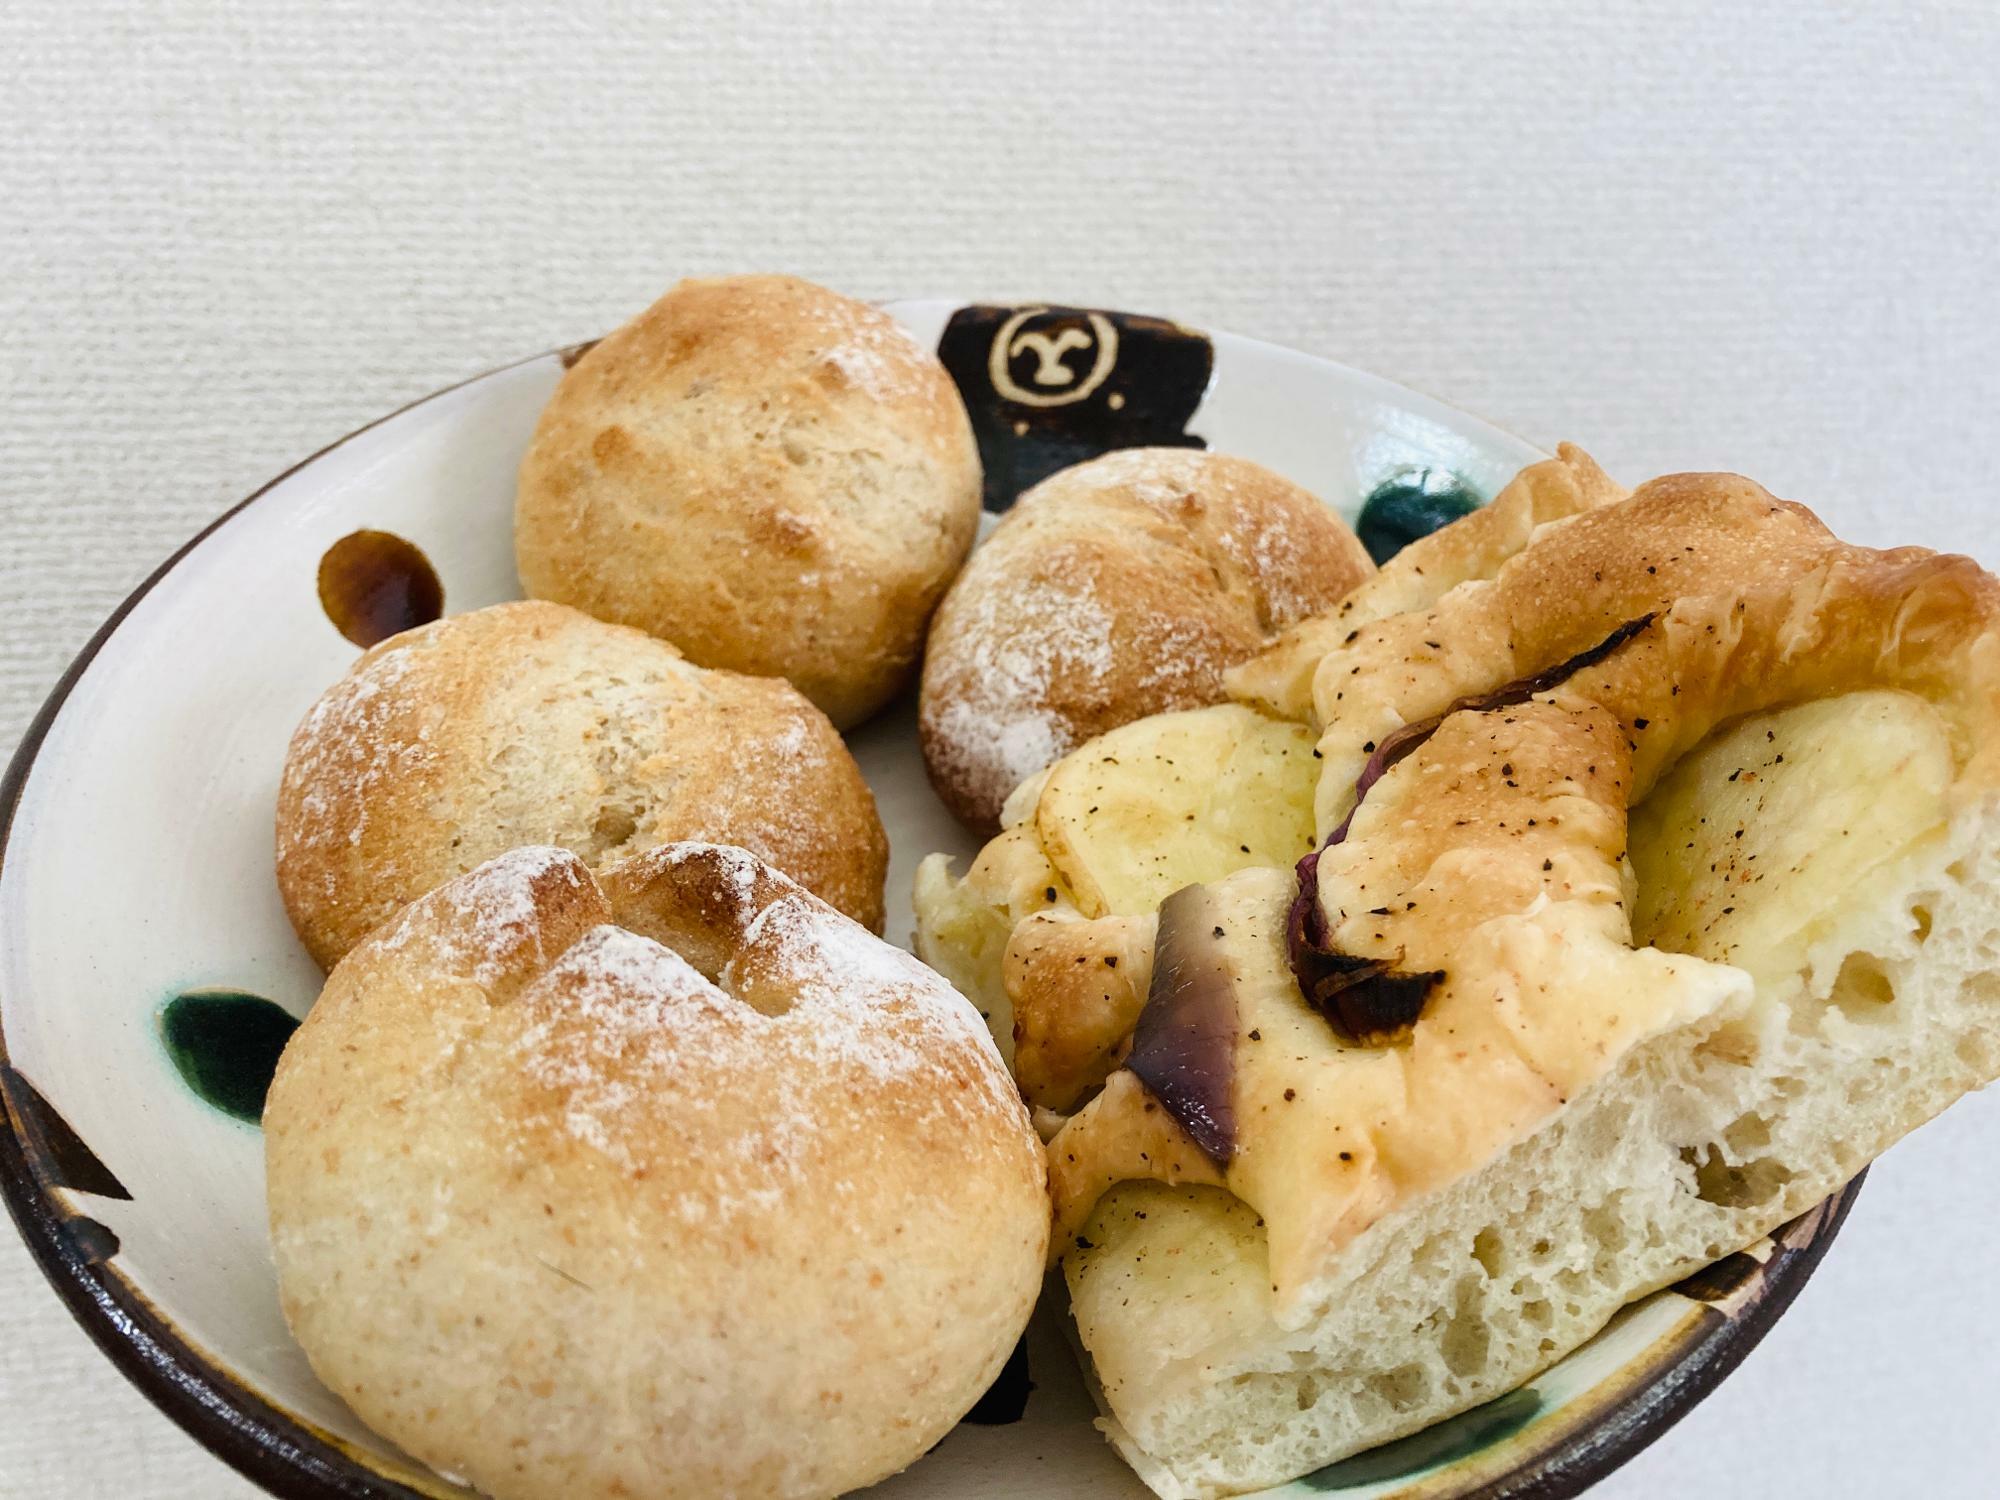 奥の3つが『九州小麦の丸パン』、手前左が『りんごとクランベリー』、左側の四角いパンが『野菜フォカッチャ』